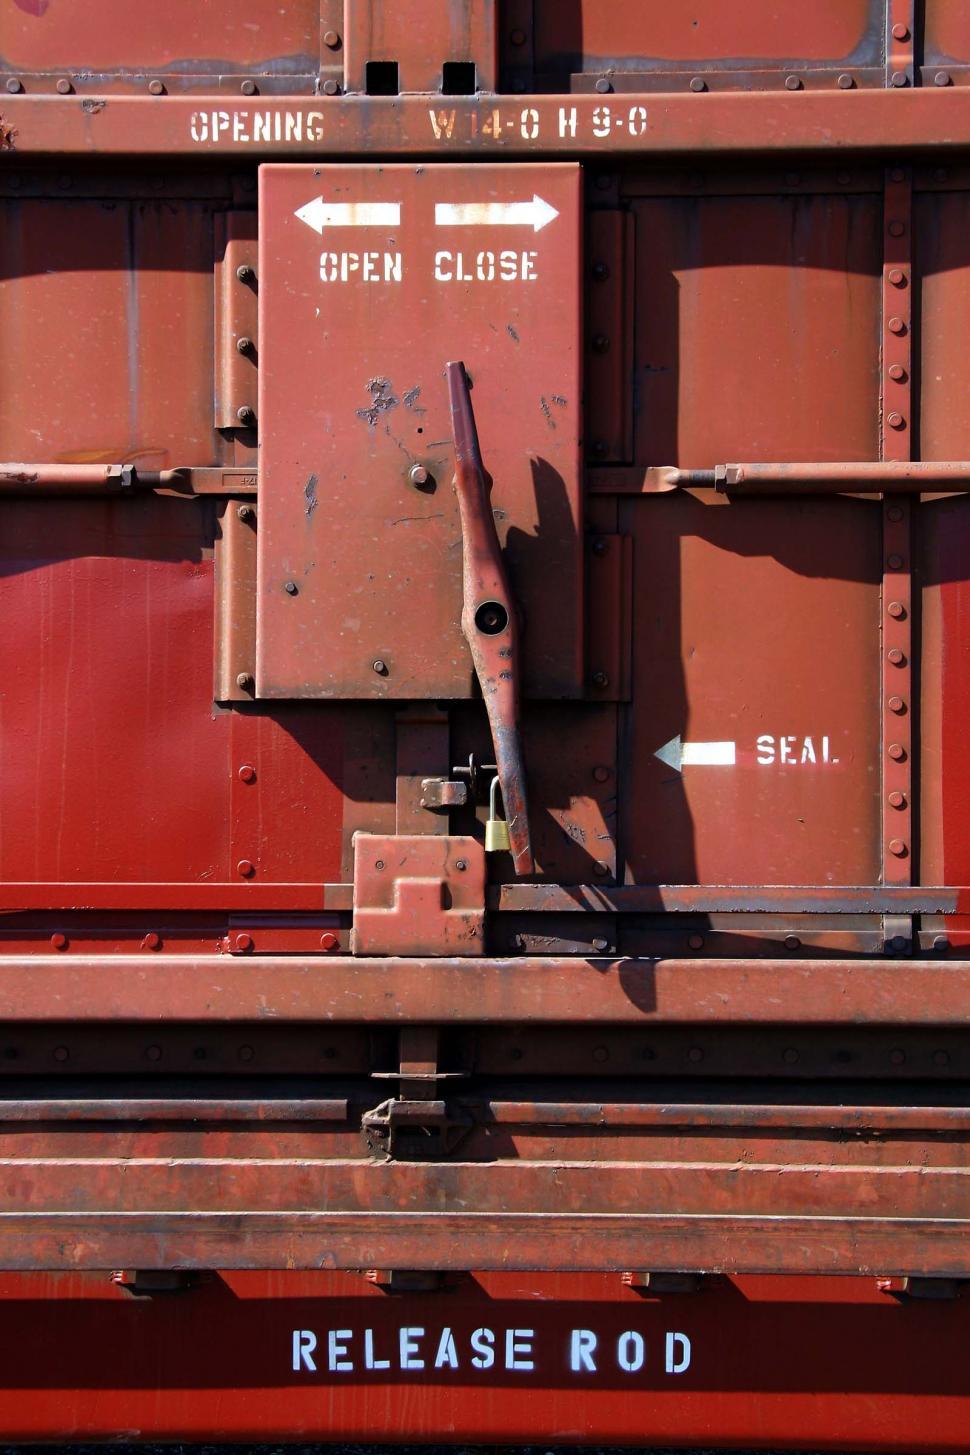 Free Image of train rivet word metal words release rod handle red open close opening lock padlock door 